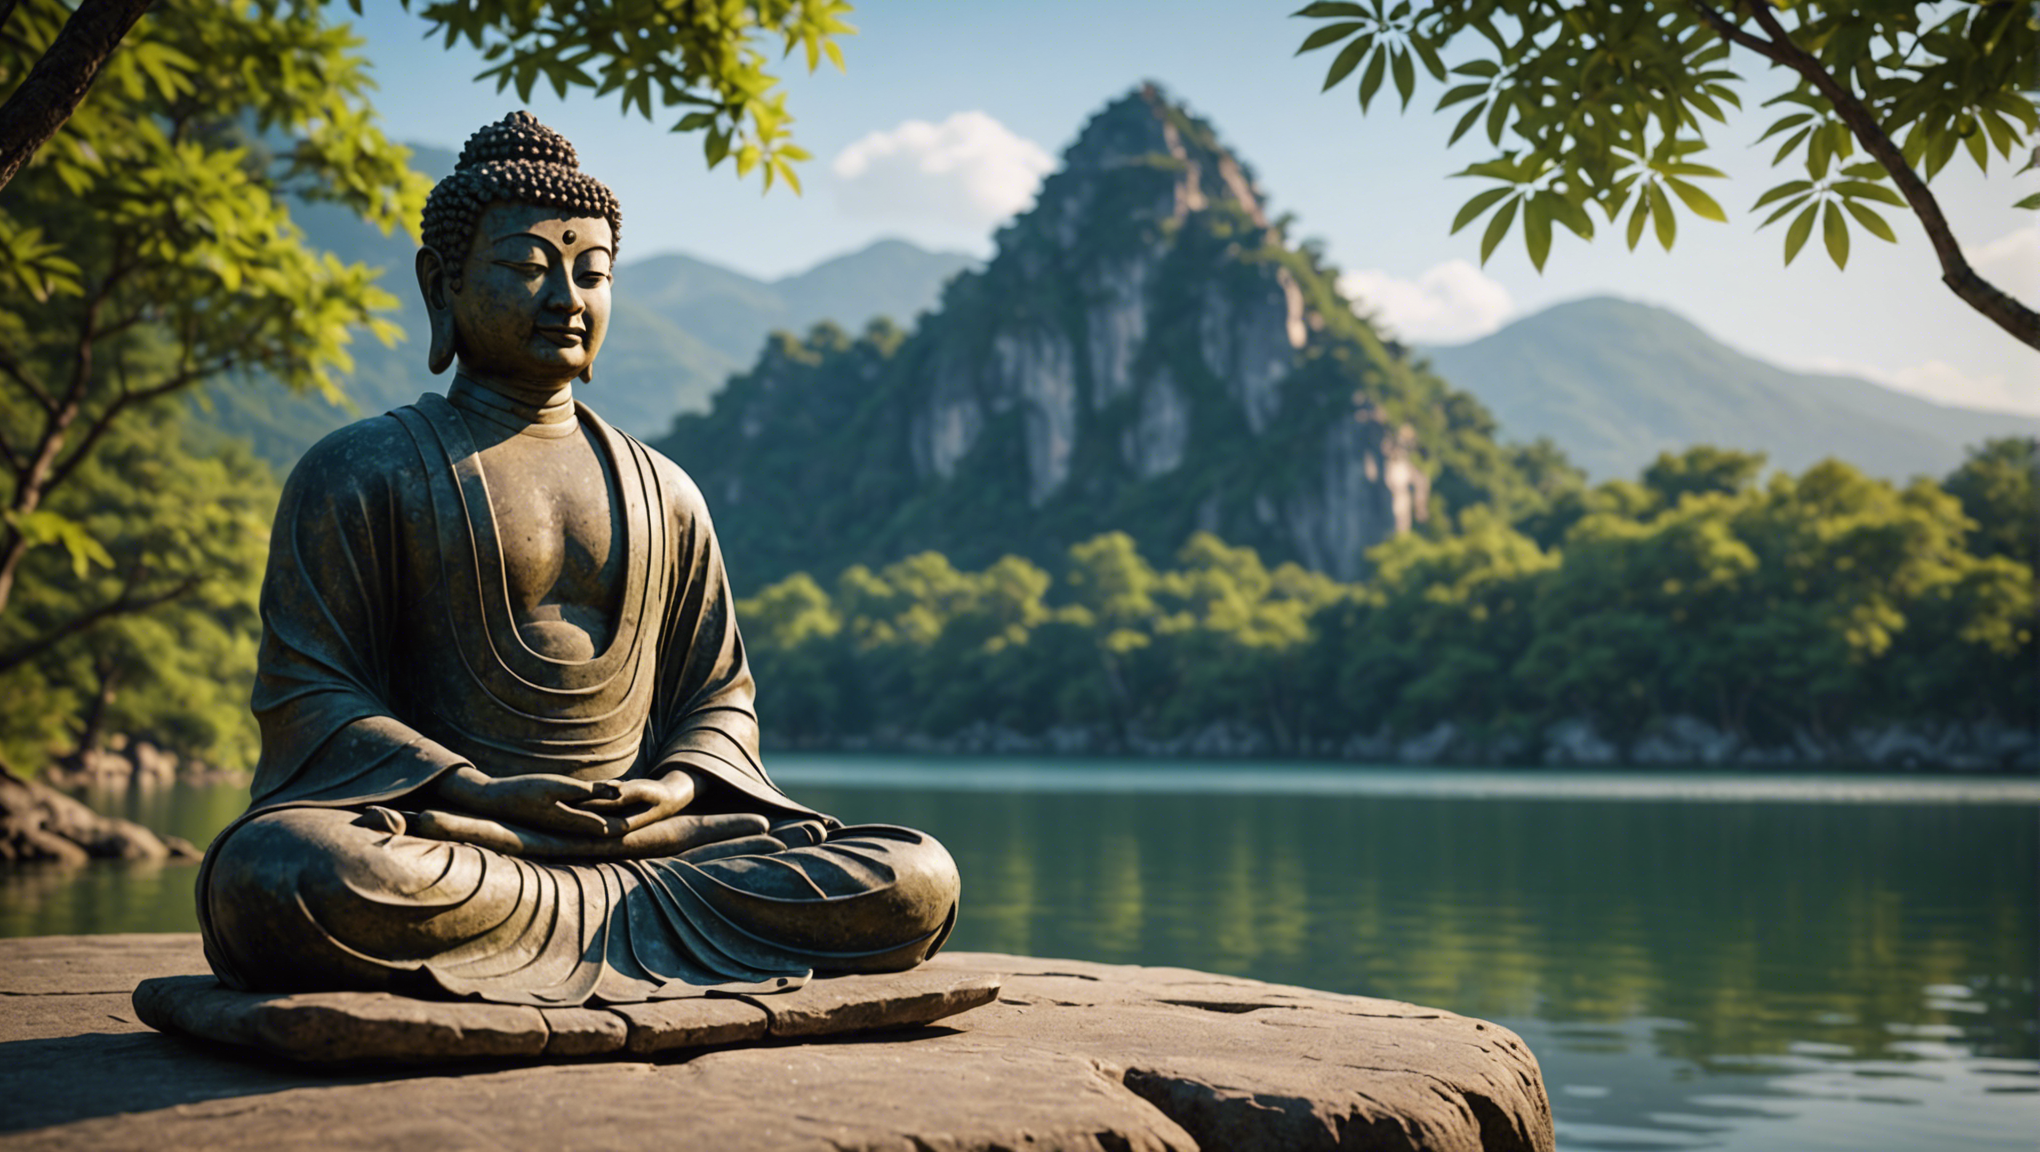 découvrez ce qu'est le zen pirlanta et comment il peut vous aider à améliorer votre bien-être et votre qualité de vie.